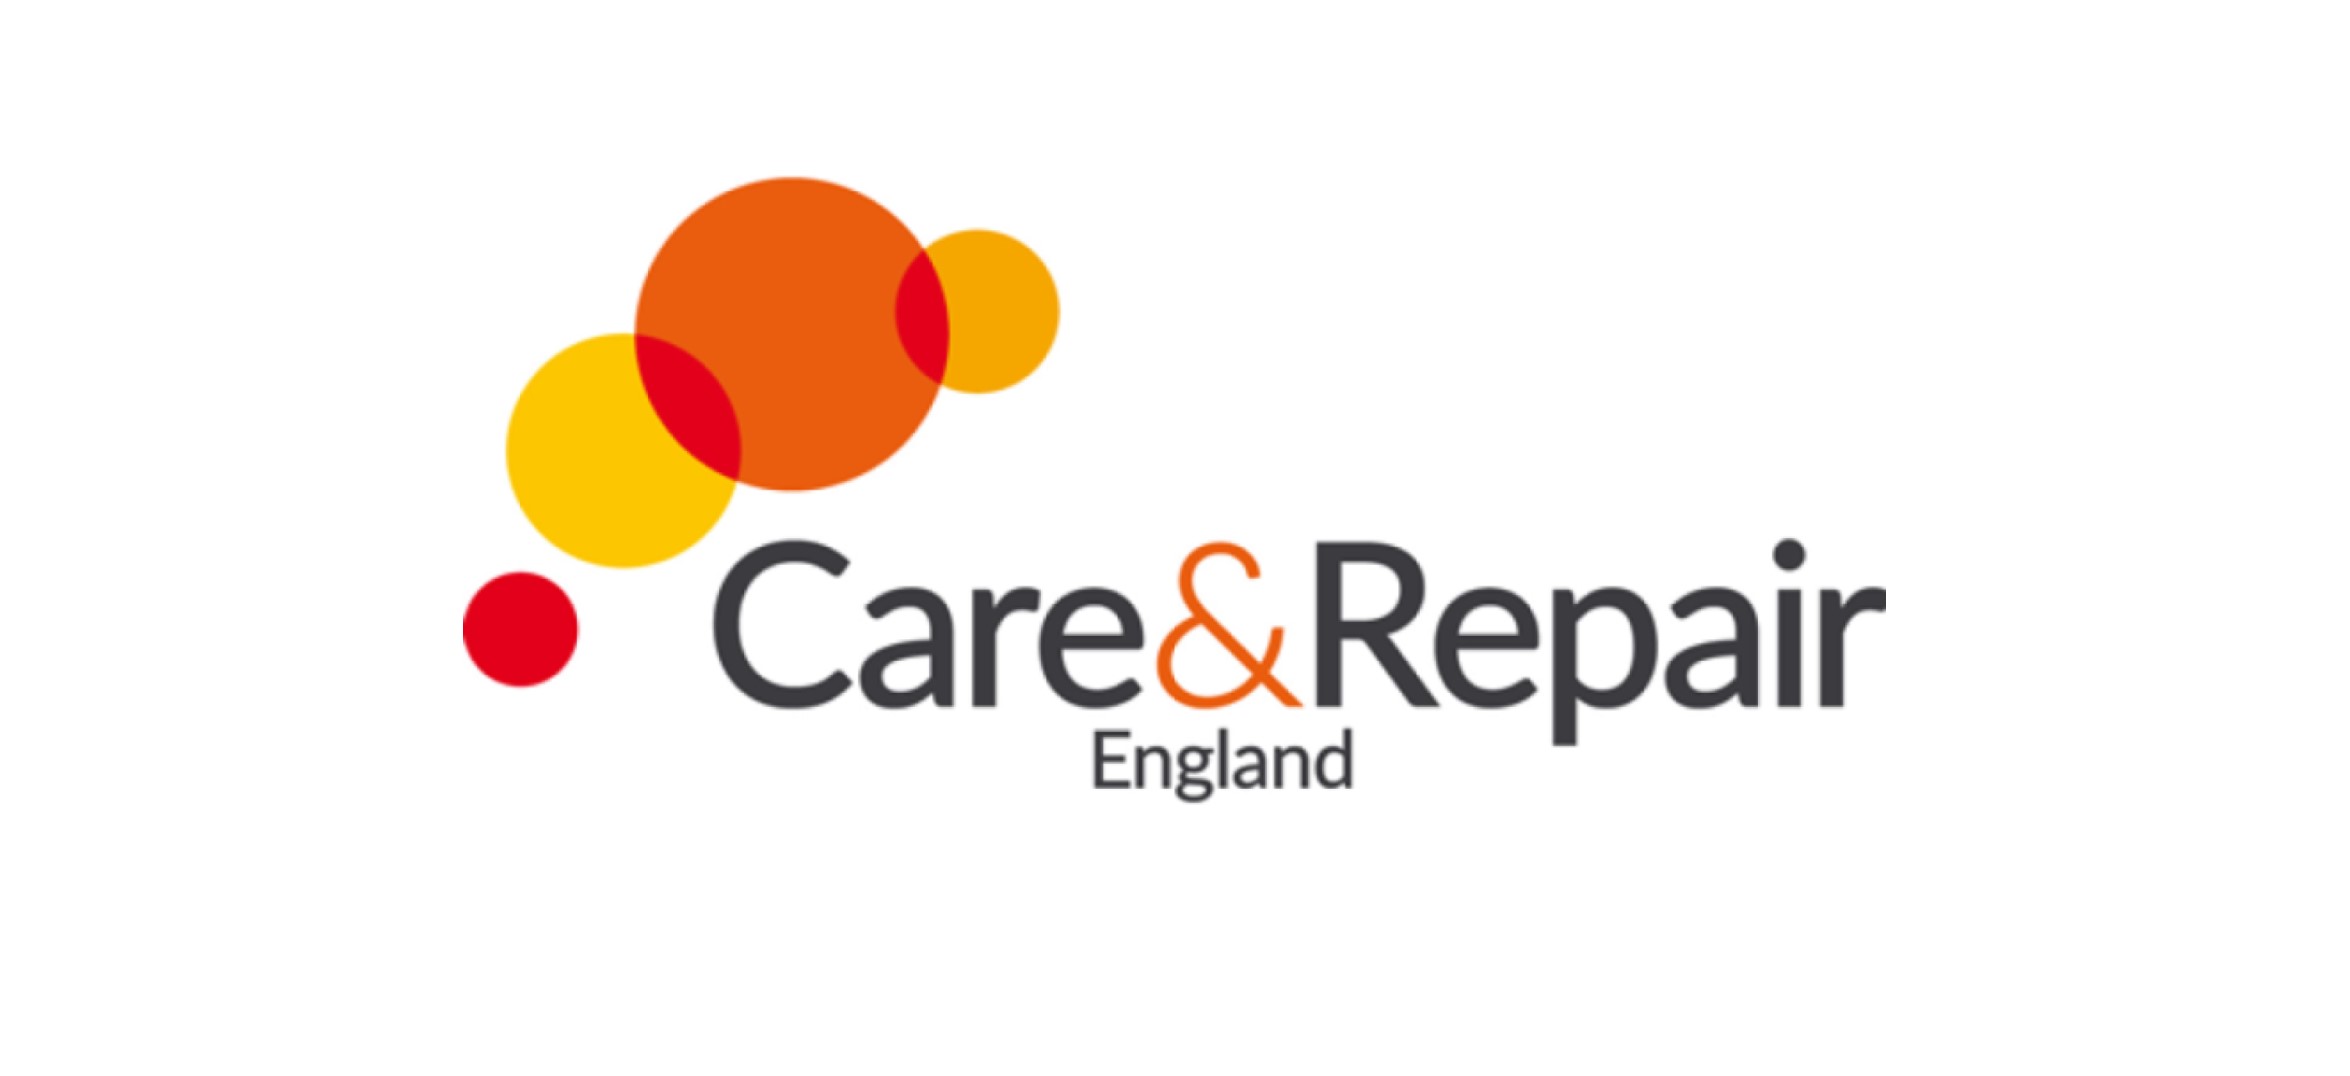 Care & Repair England logo